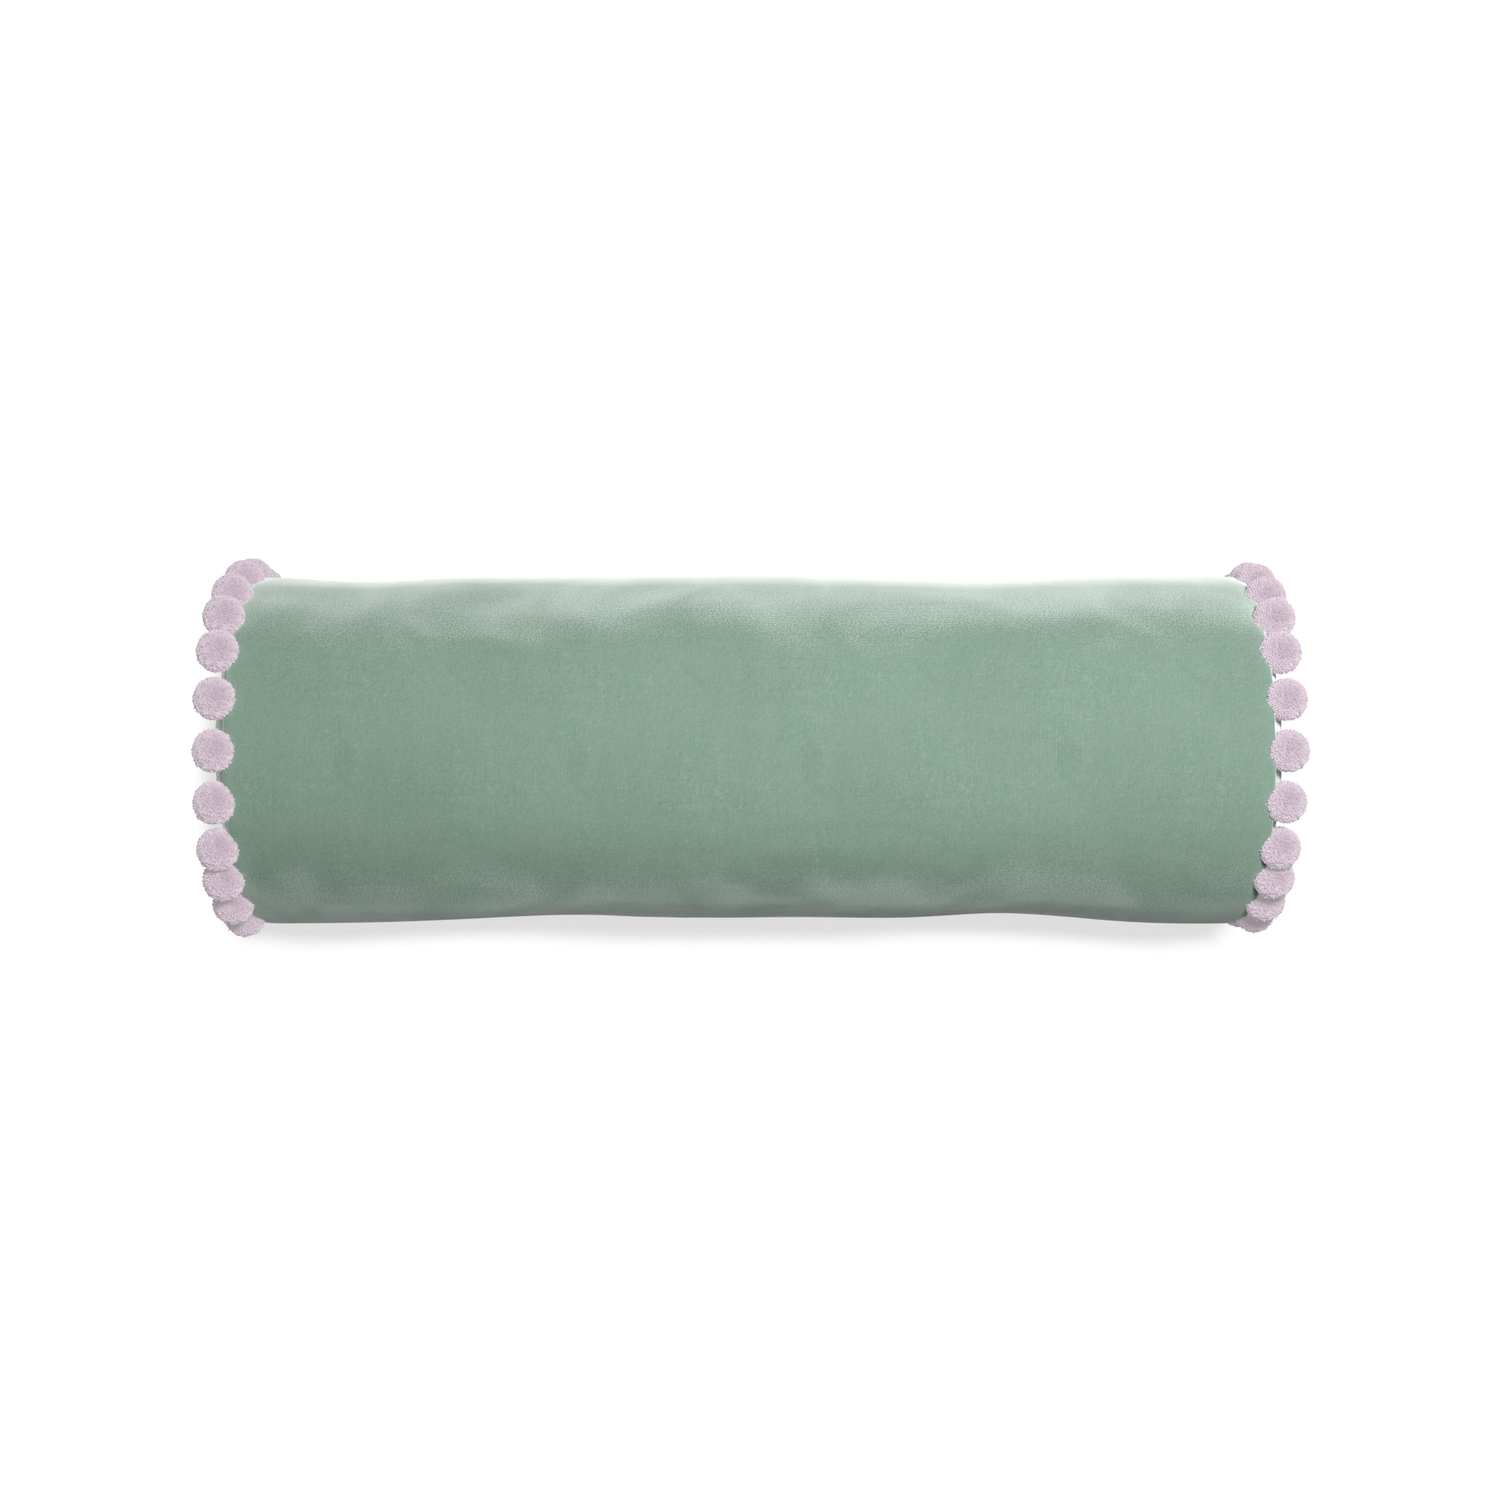 bolster blue green velvet pillow with lilac pom poms